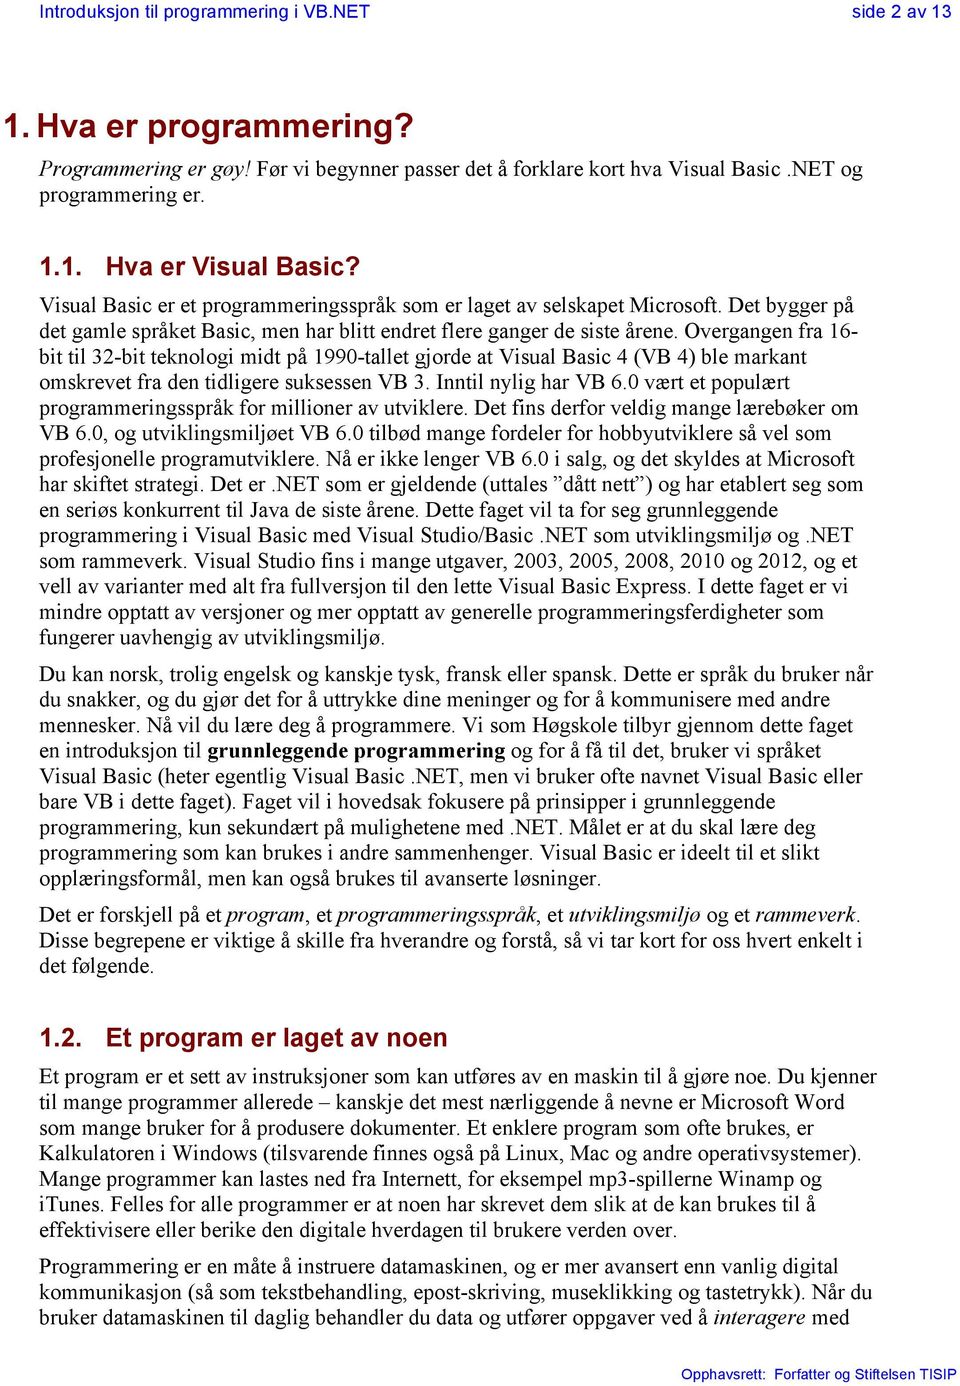 Overgangen fra 16- bit til 32-bit teknologi midt på 1990-tallet gjorde at Visual Basic 4 (VB 4) ble markant omskrevet fra den tidligere suksessen VB 3. Inntil nylig har VB 6.